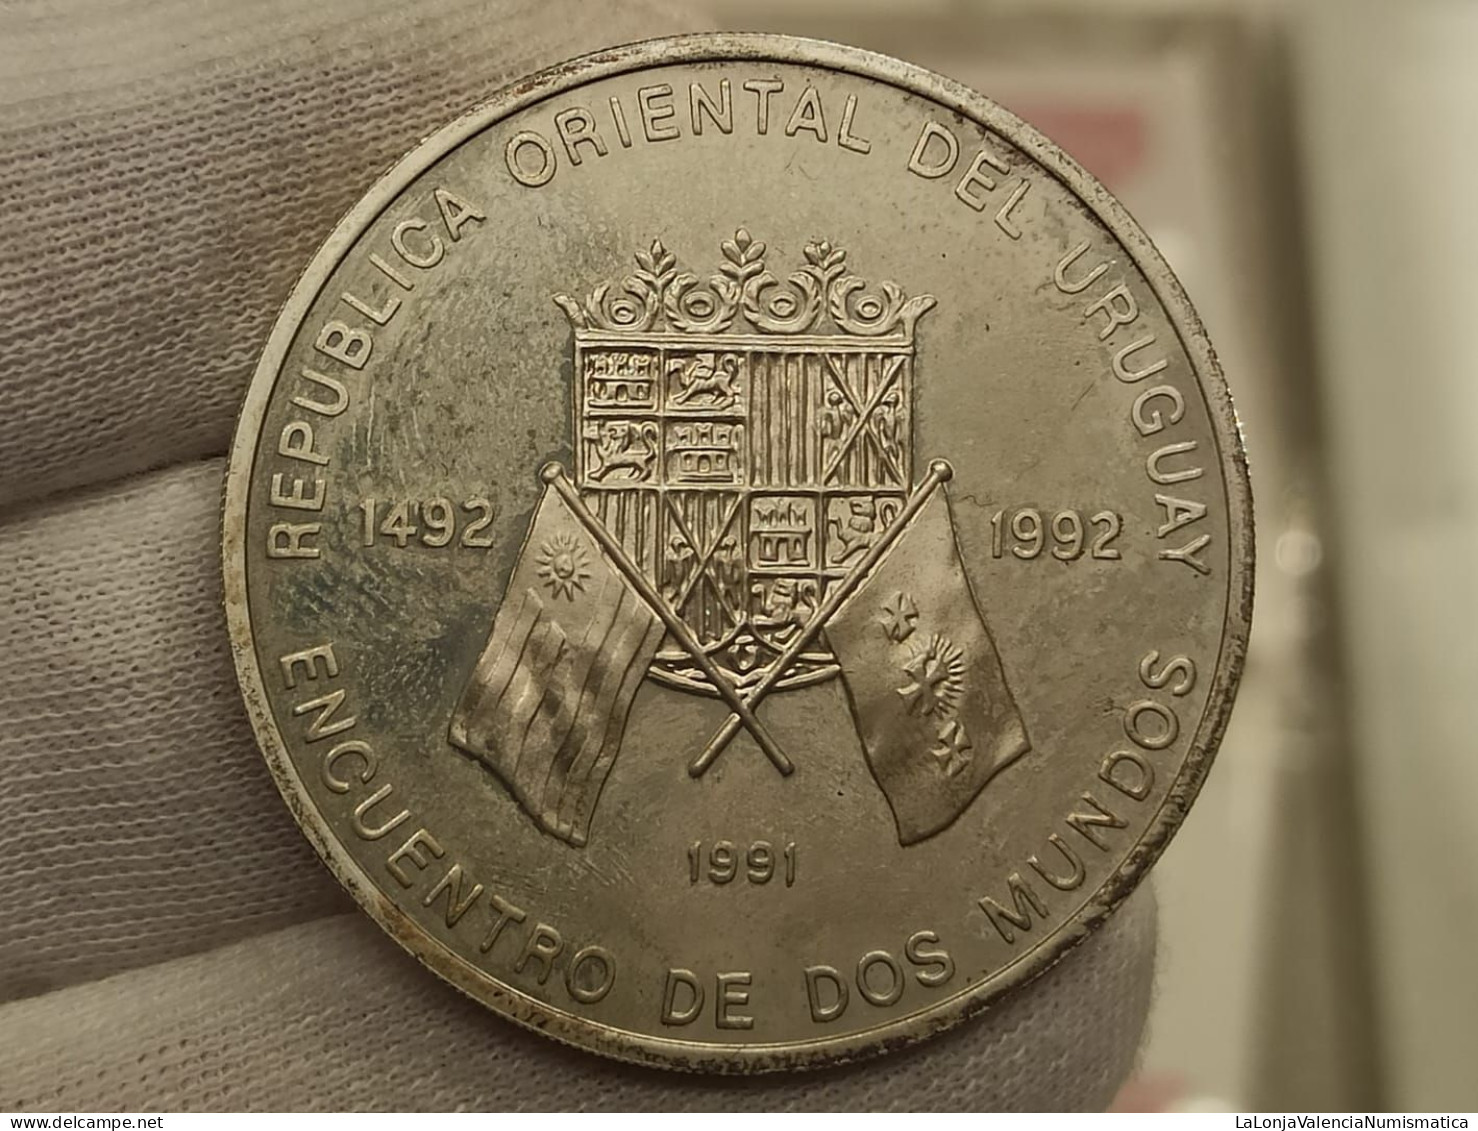 Uruguay 50000 Nuevos Pesos 1991 Encuentro De Dos Mundos 1492-1992 Km 100 Plata - Uruguay